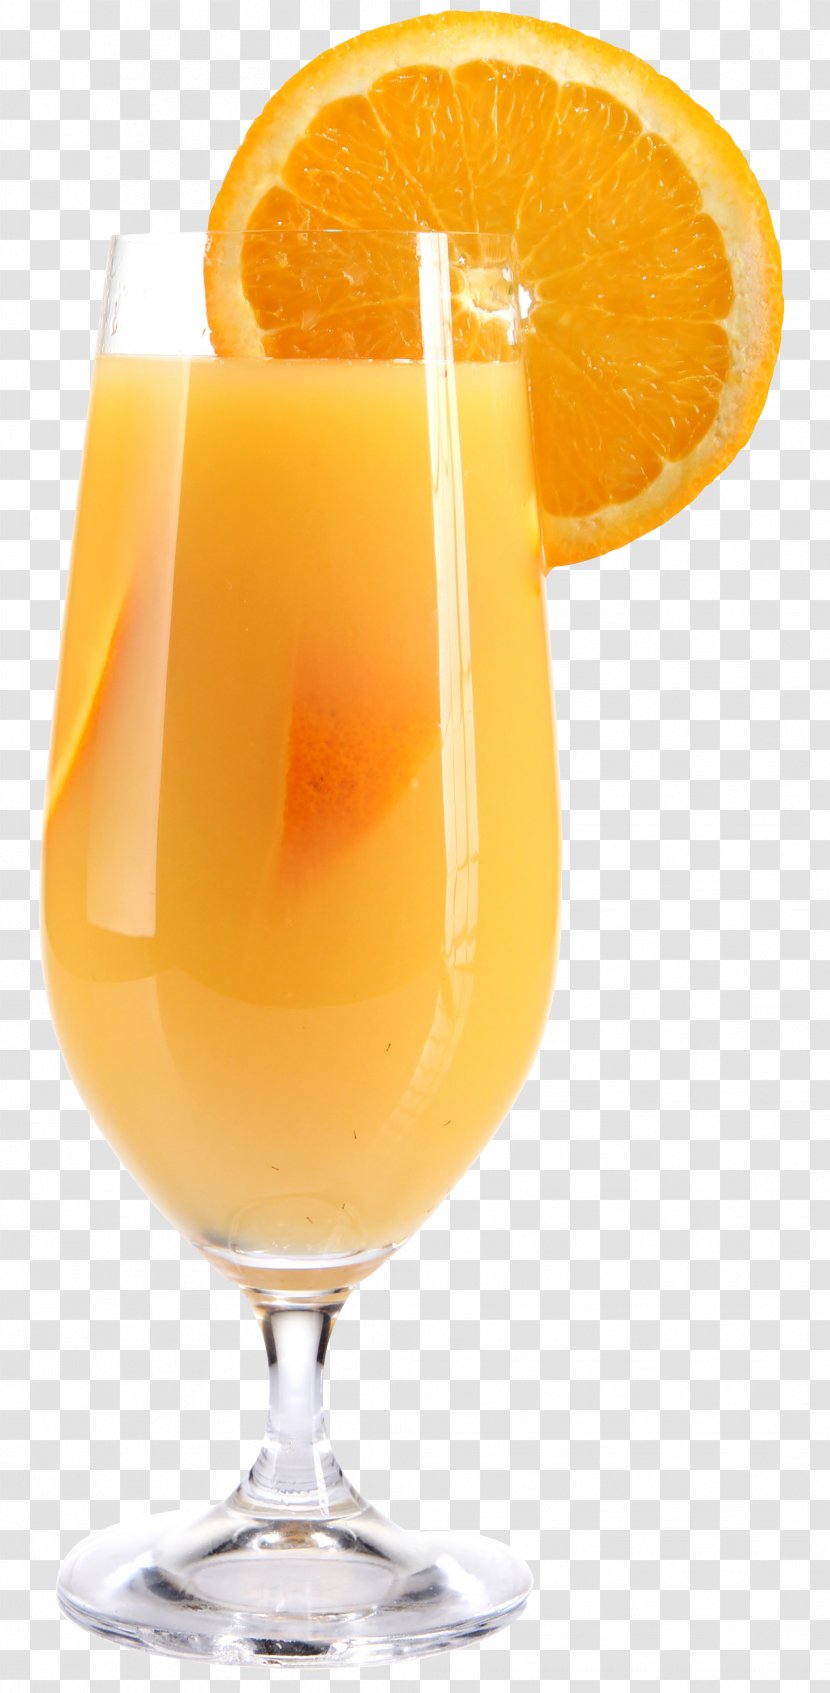 Orange Juice Screwdriver Smoothie Drink - Nonalcoholic Beverage - Background Transparent PNG